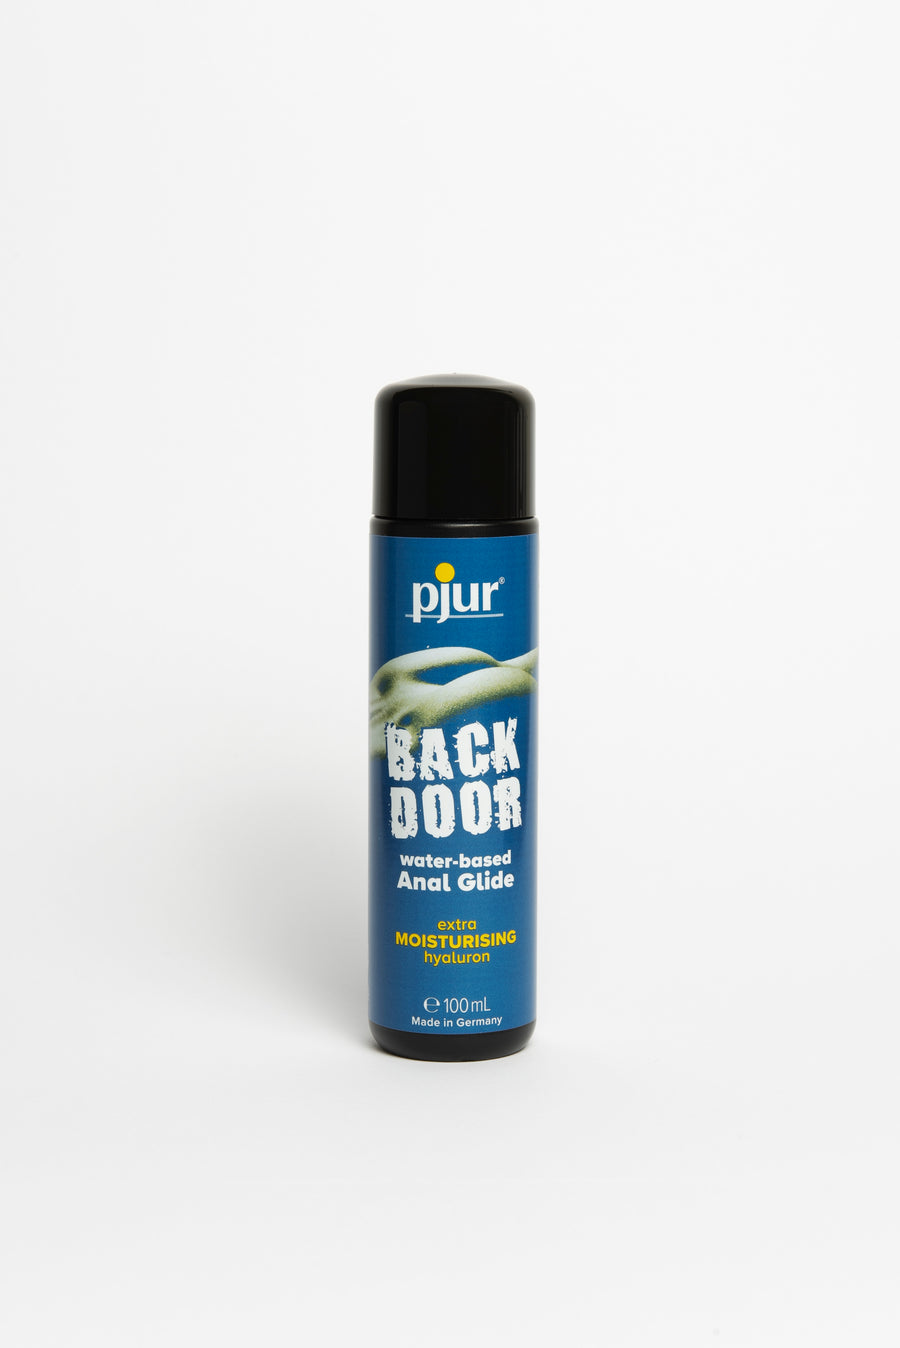 Pjur BACK DOOR water-based Anal Glide